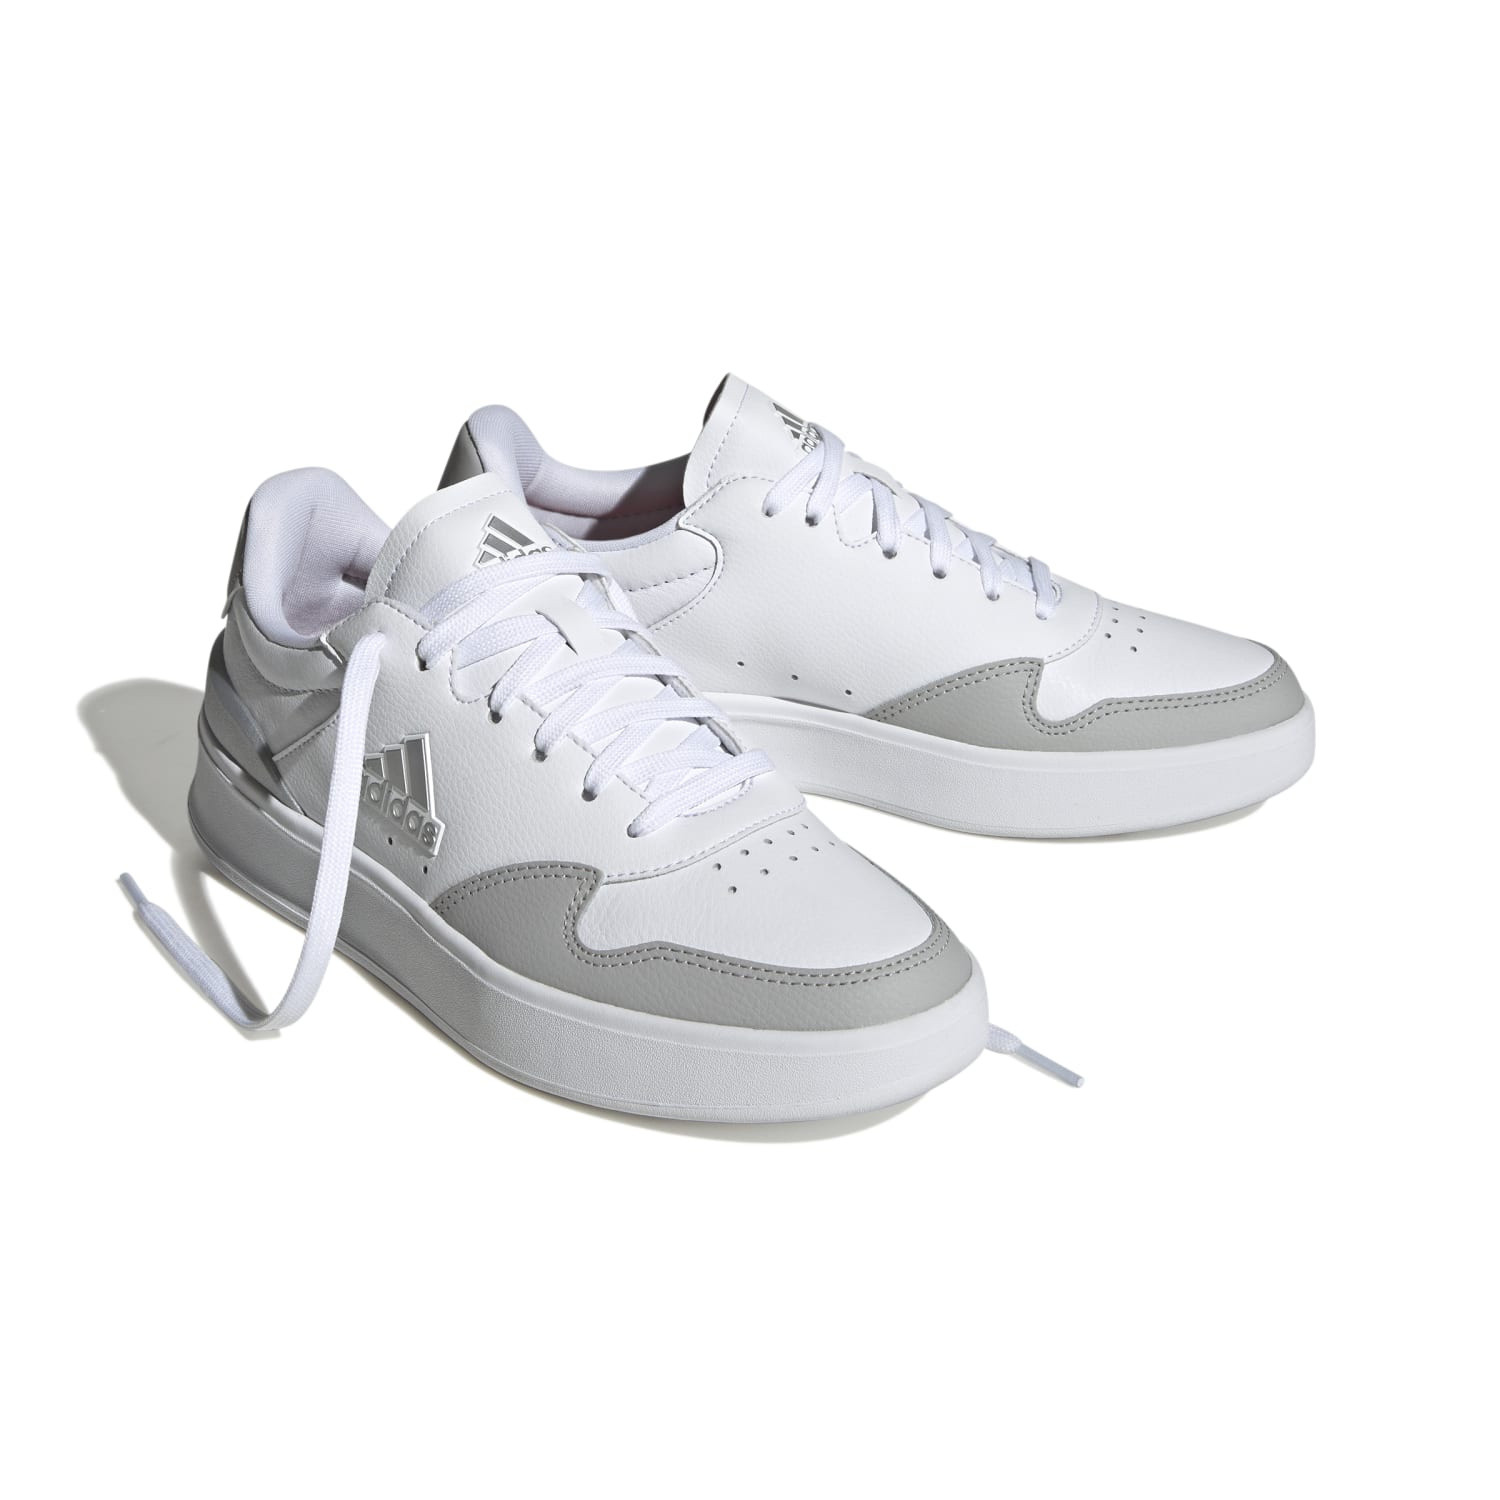 Adidas - Kantana shoes, White, large image number 1